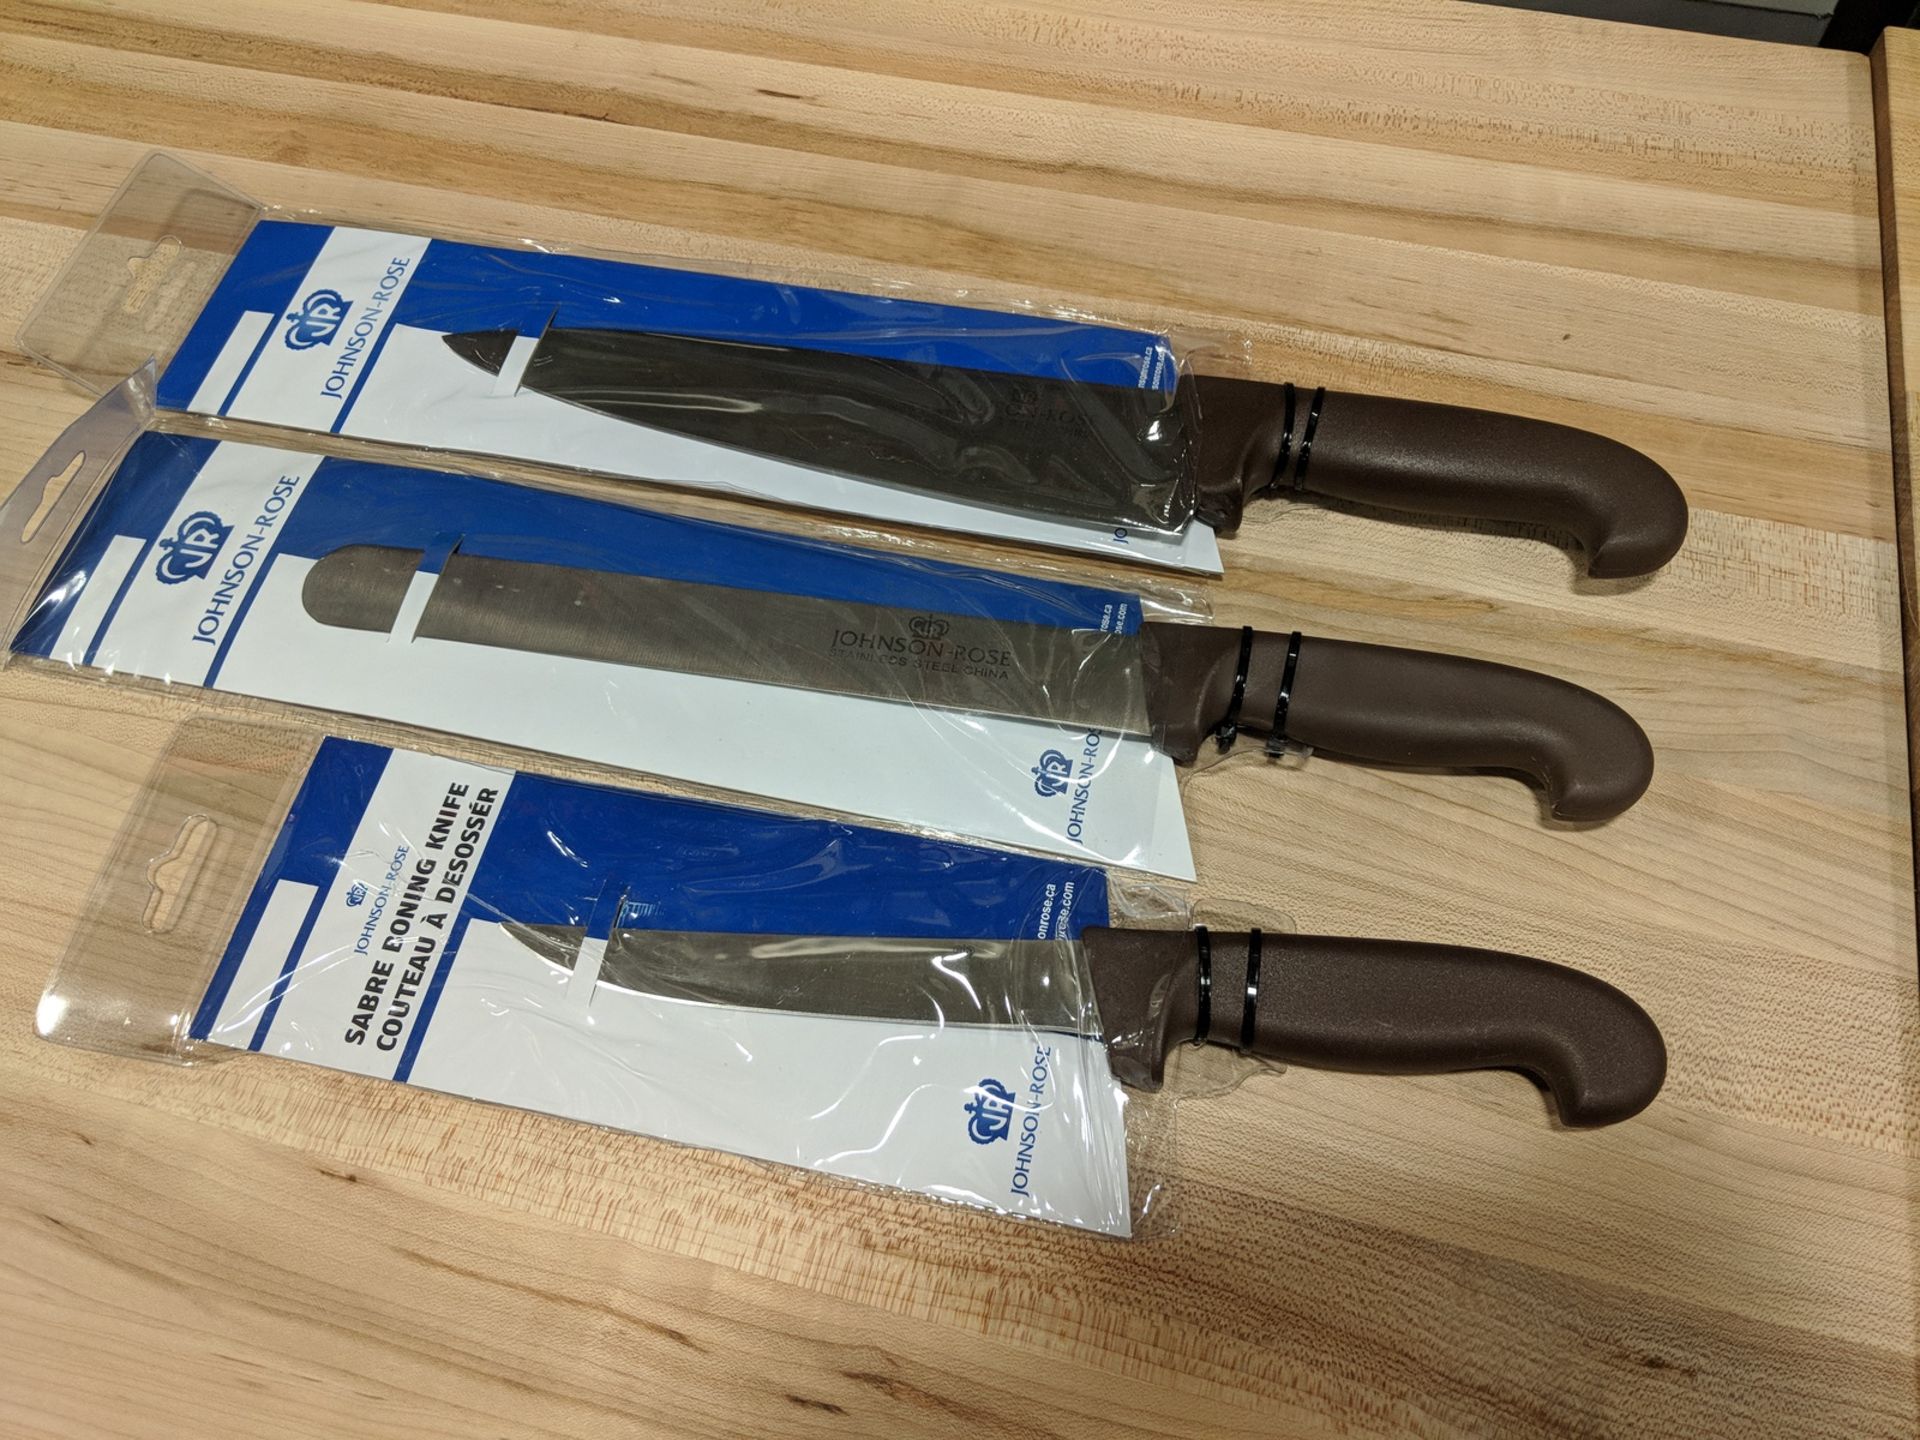 10" Chef Knife, 10" Slicing Knife, 6" Boning Knife - Set of 3 Knives - Image 3 of 4